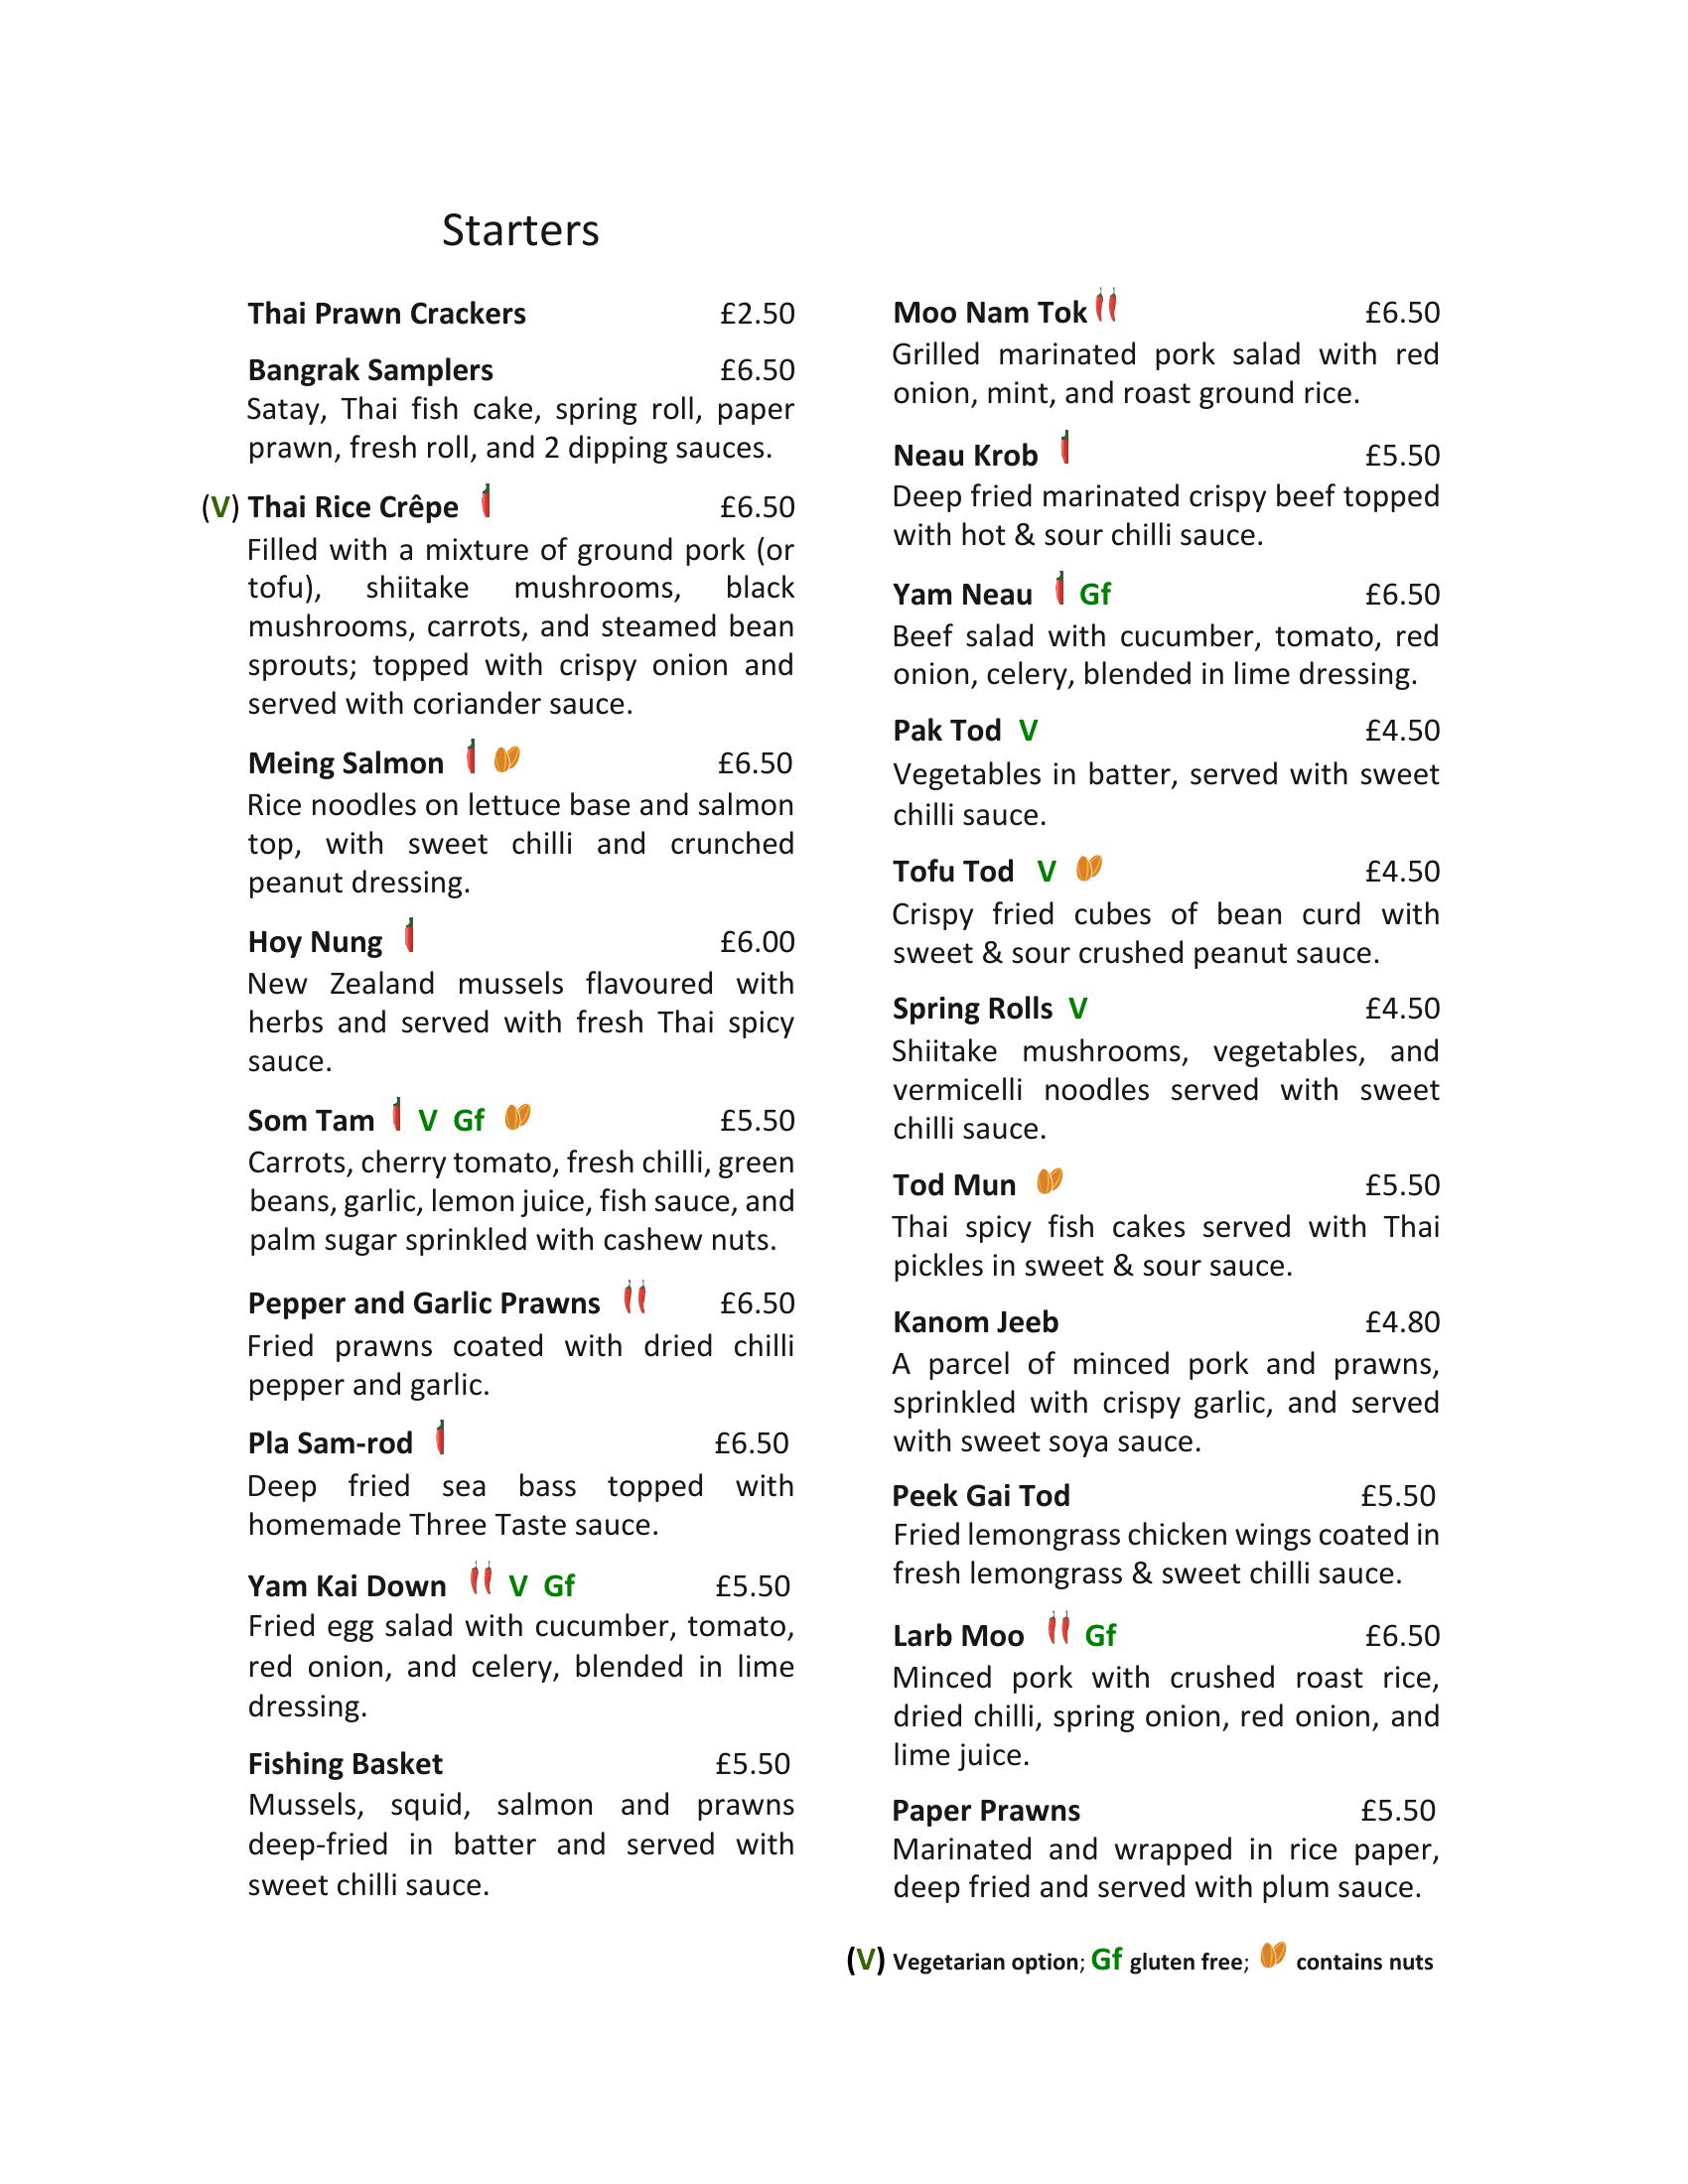 Bangrak Thai Newcastle - main menu